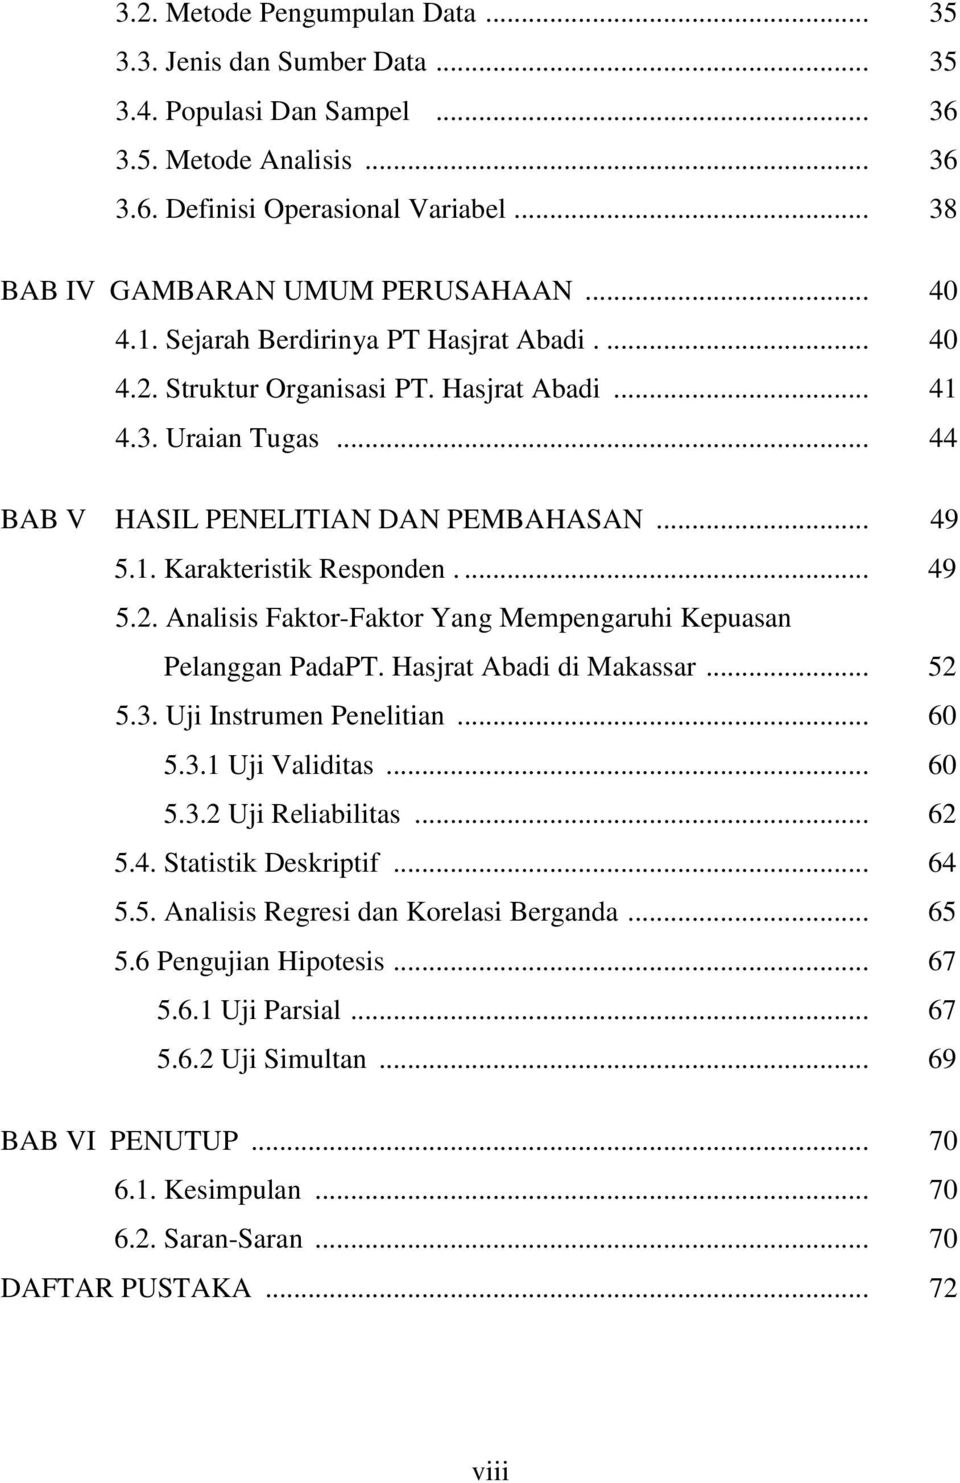 ... 49 5.2. Analisis Faktor-Faktor Yang Mempengaruhi Kepuasan Pelanggan PadaPT. Hasjrat Abadi di Makassar... 52 5.3. Uji Instrumen Penelitian... 60 5.3.1 Uji Validitas... 60 5.3.2 Uji Reliabilitas.